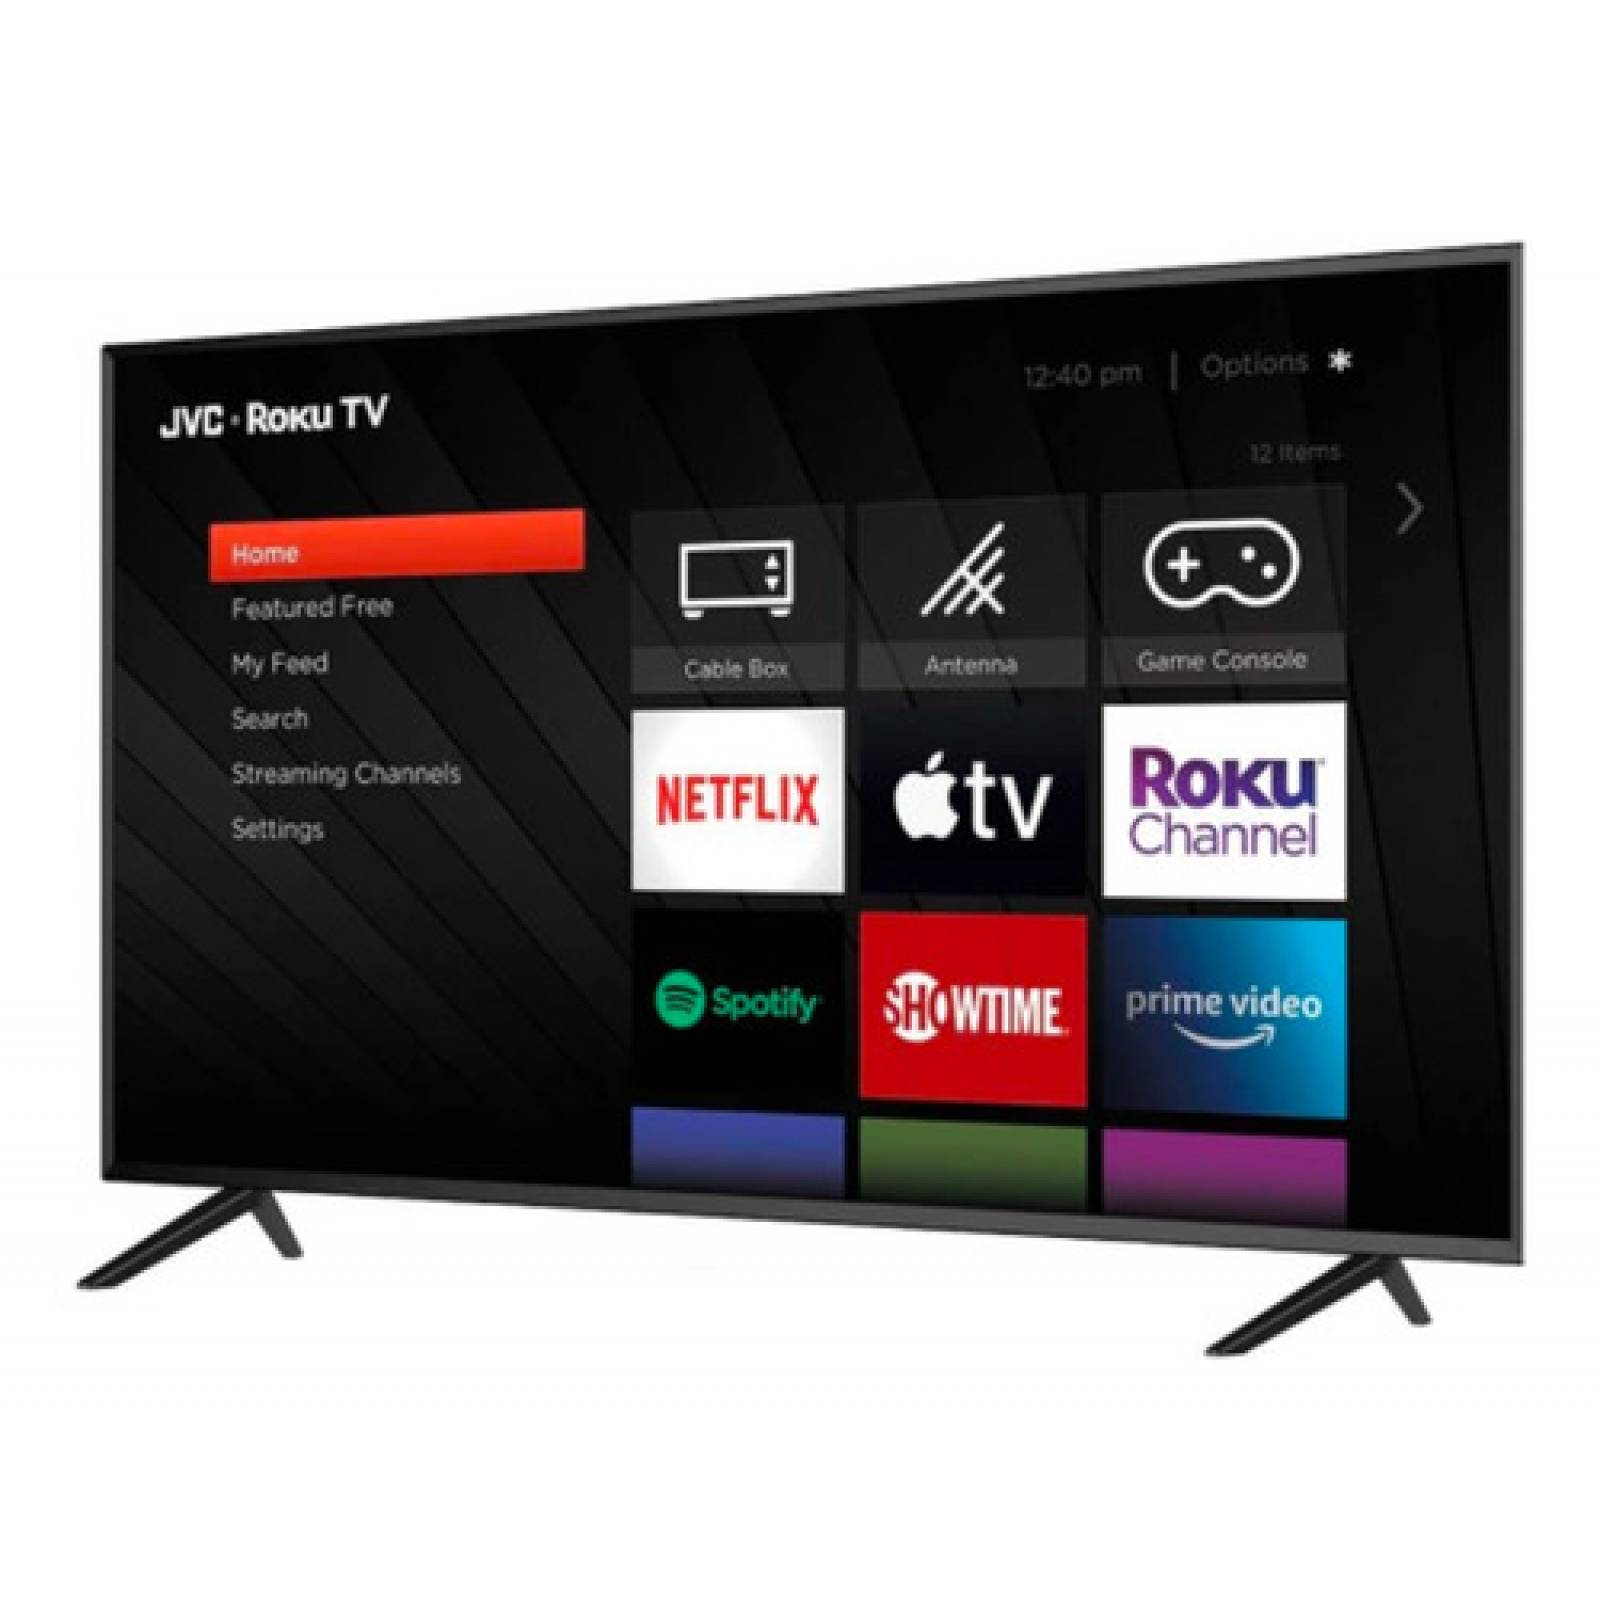 Televisor JVC 43 pulgadas LED 4K HDR Smart TV JVC